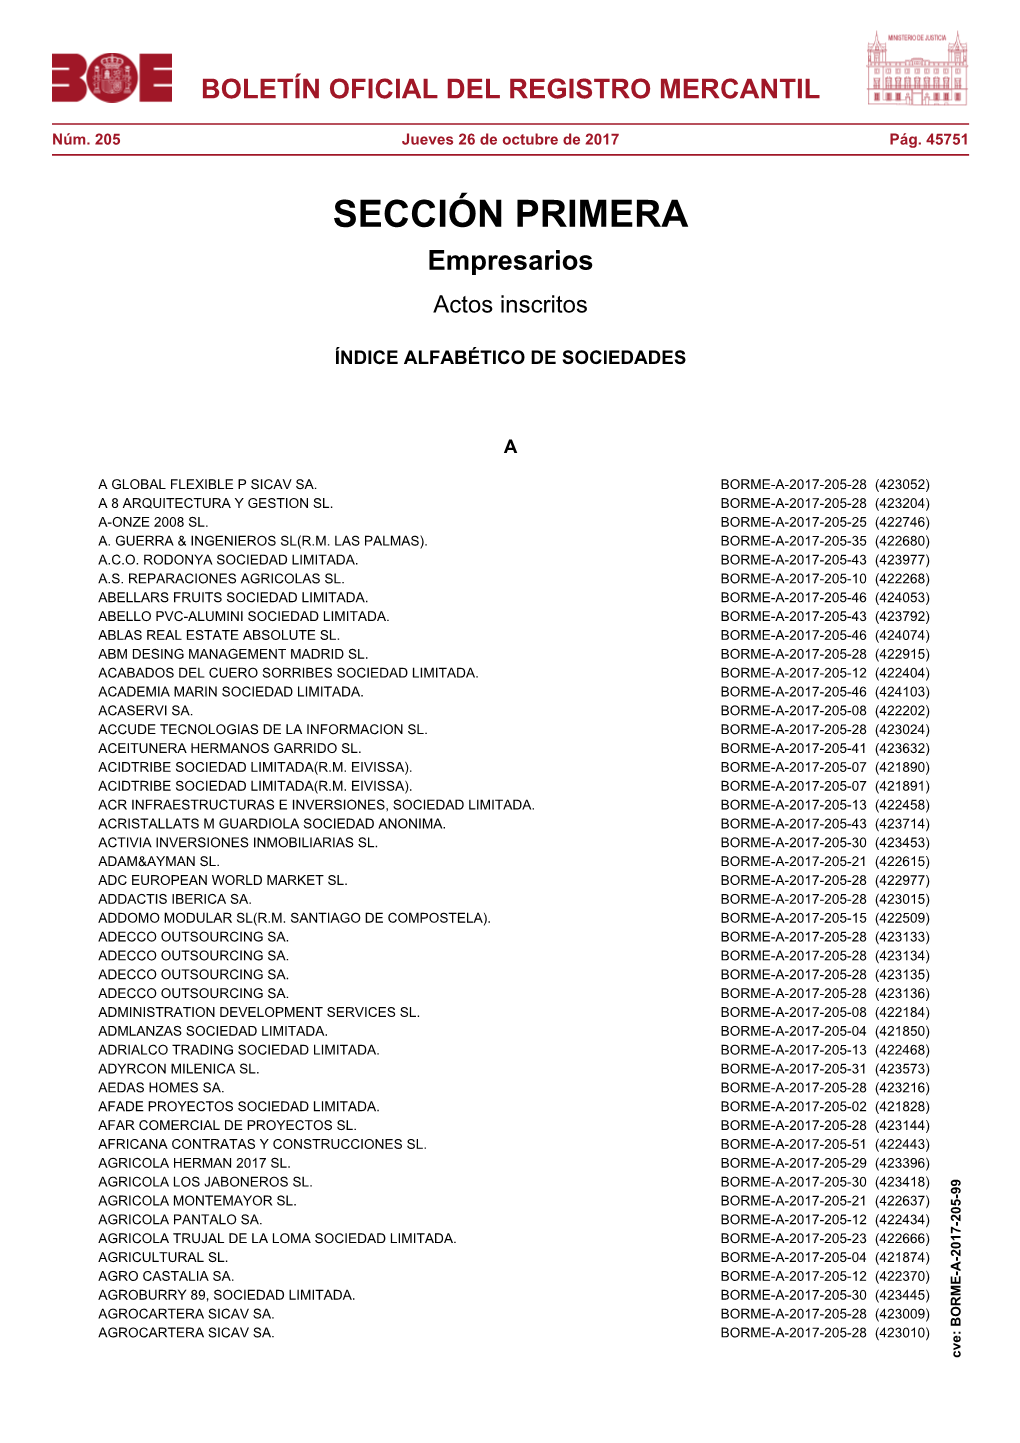 Borme-A-2017-205-99 Boletín Oficial Del Registro Mercantil